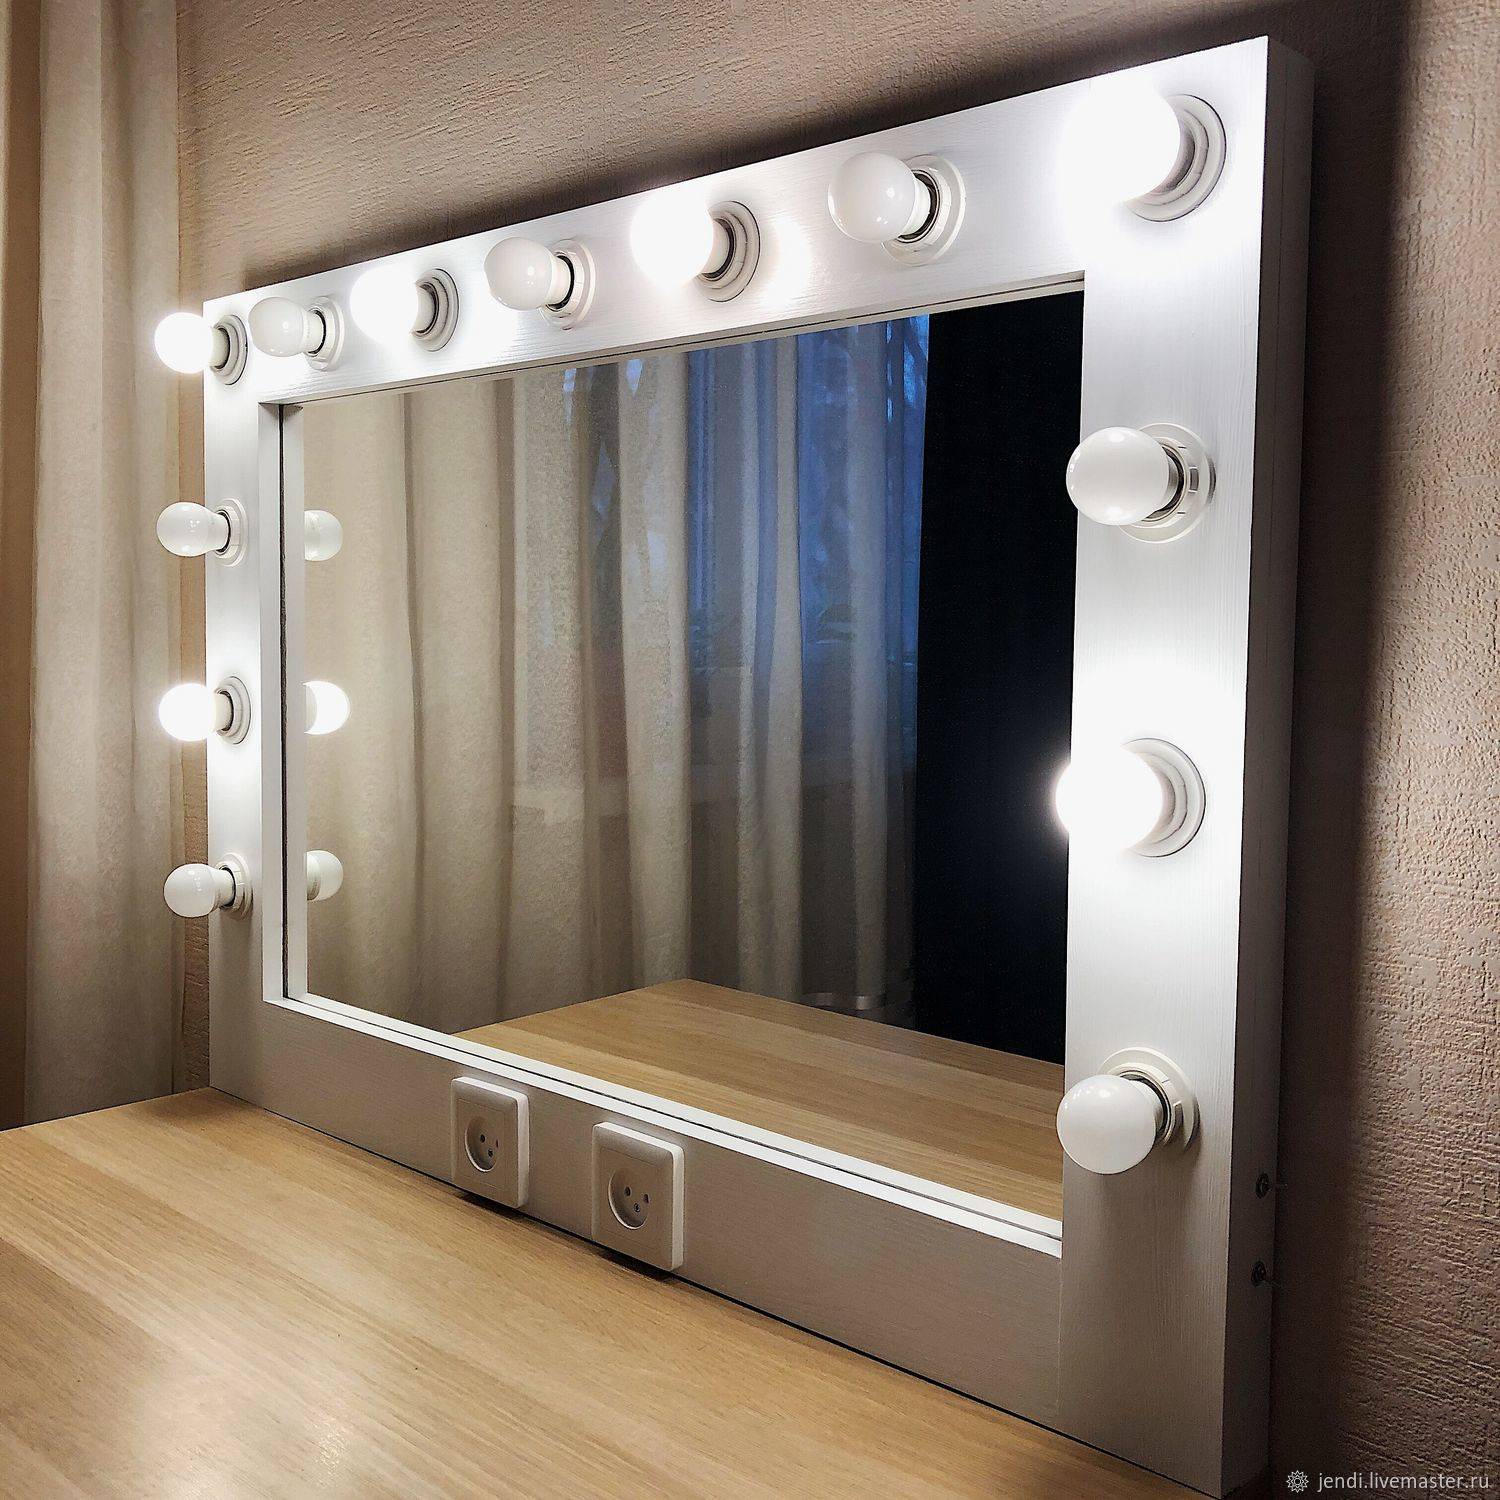 Гримерное зеркало с лампочками: делаем с умом своими руками и усовершенствуем